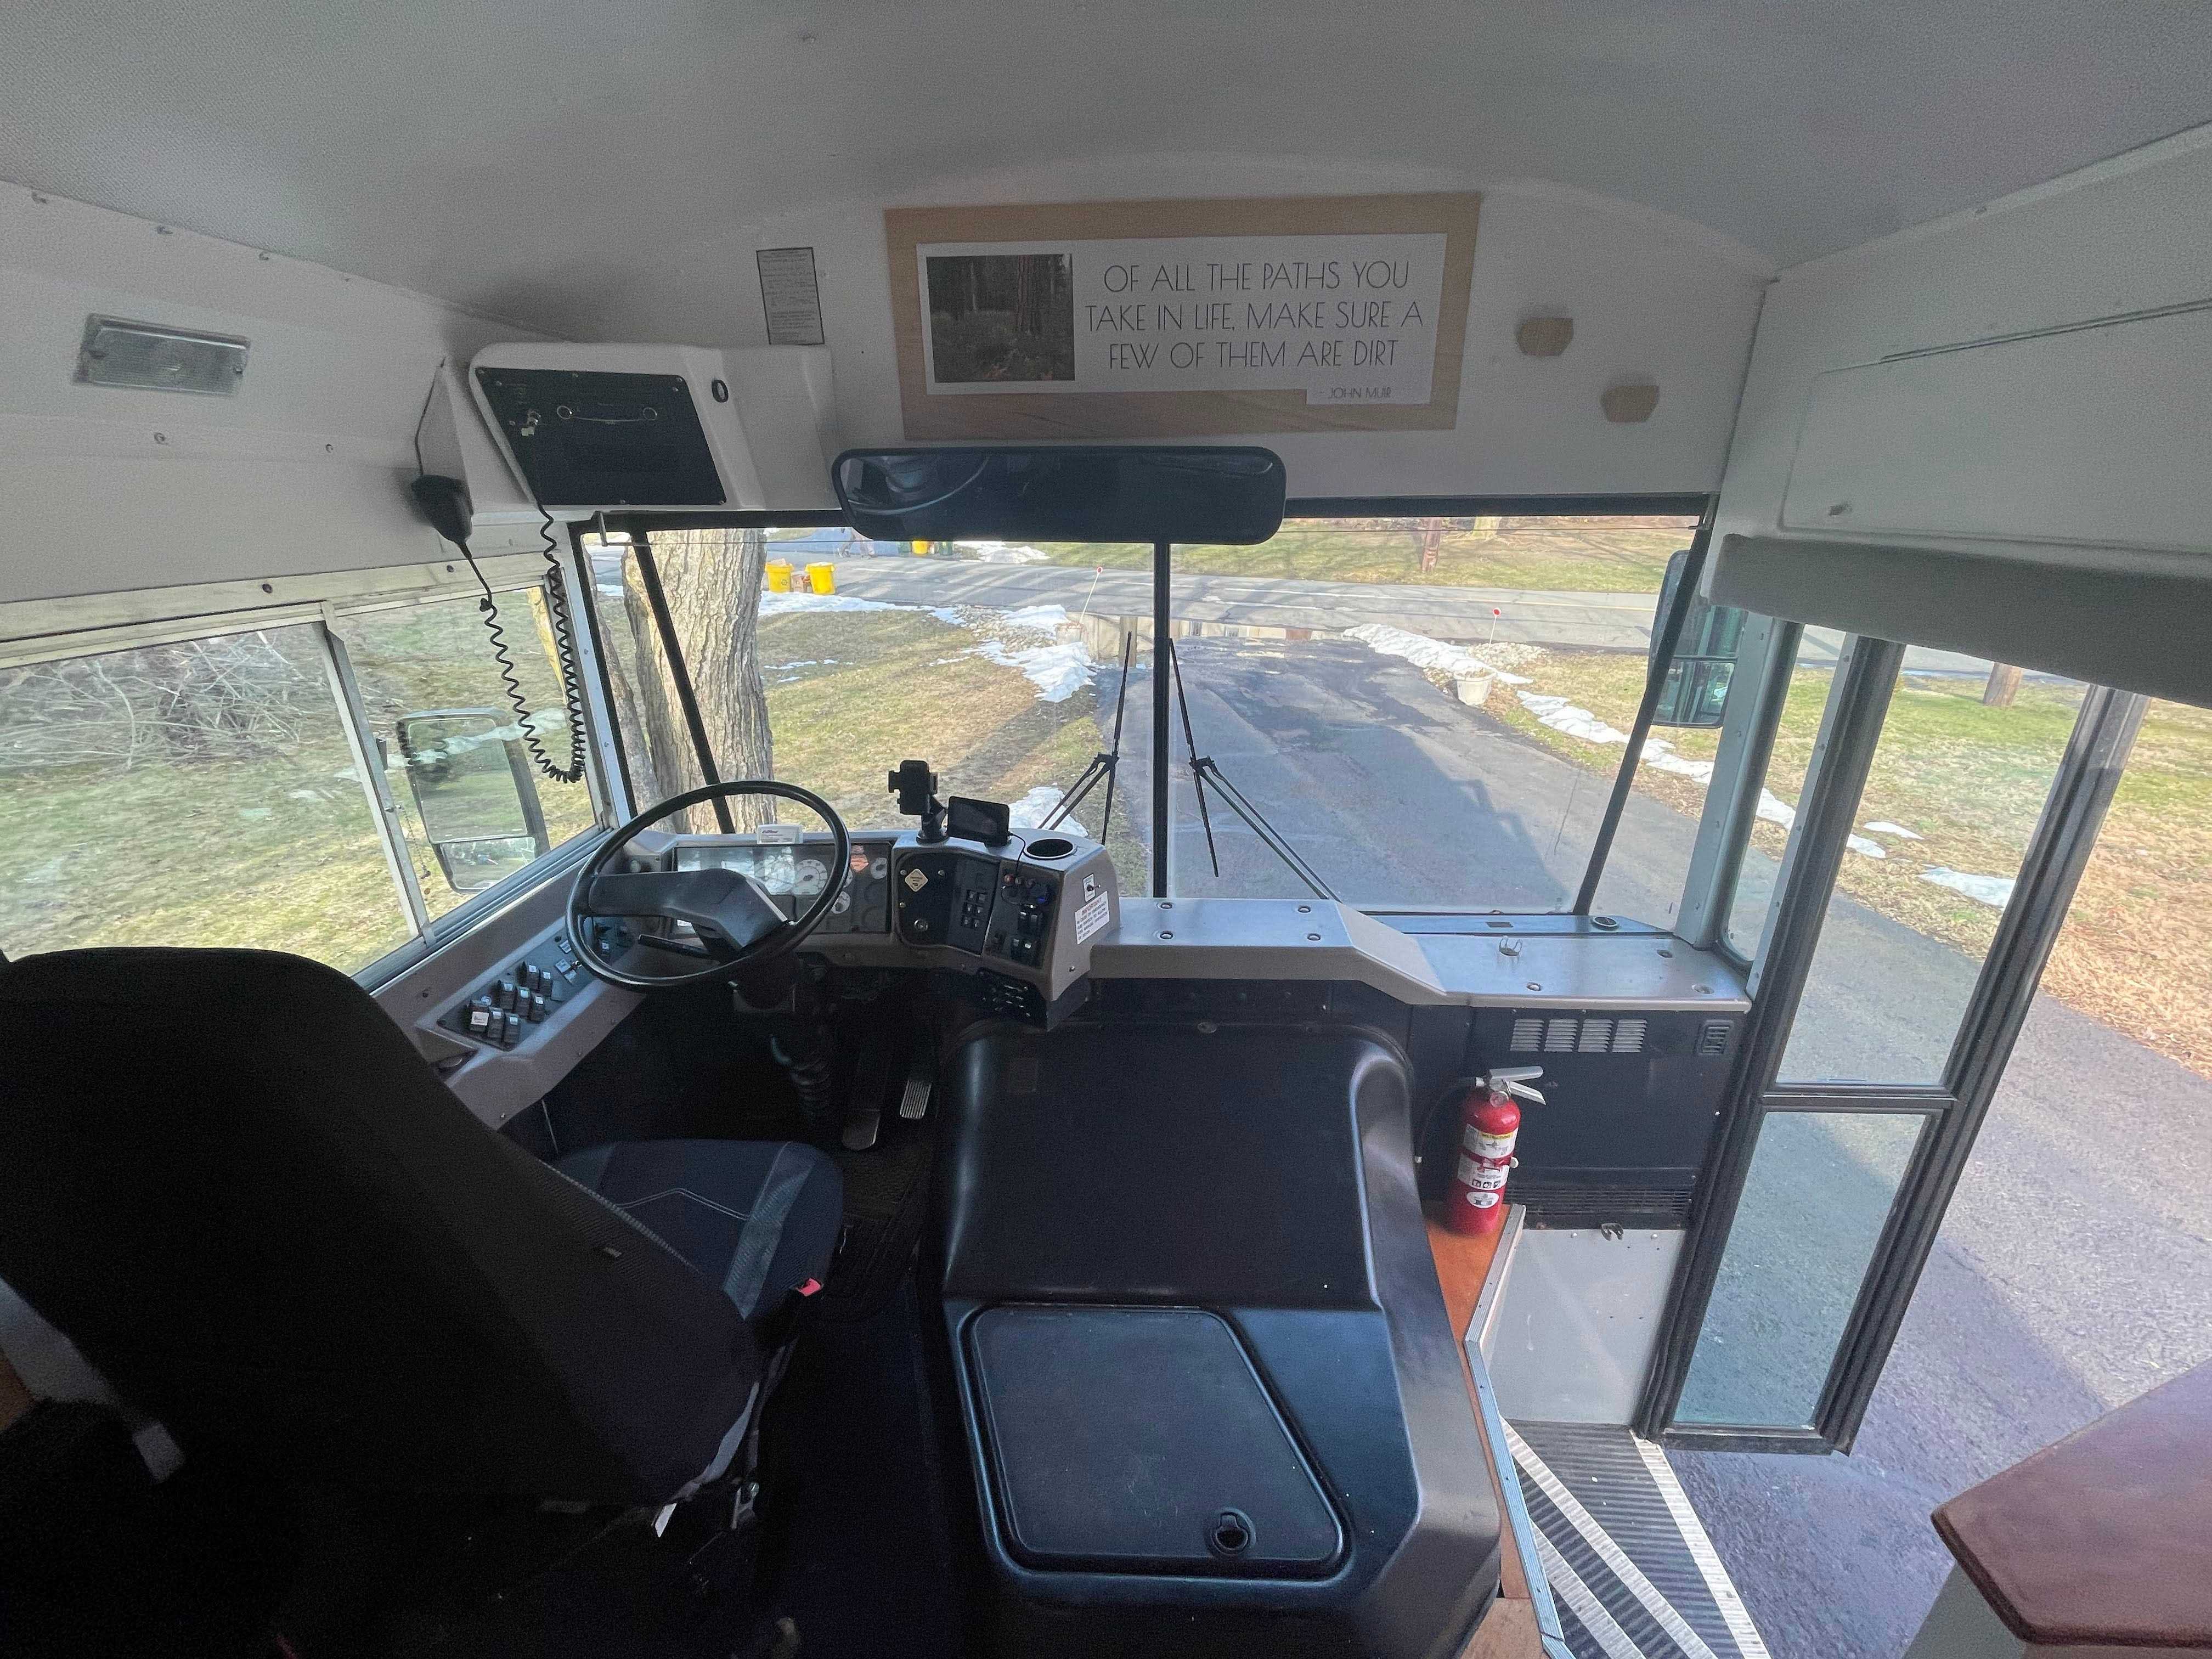 Vorderer Bereich des Busses mit offenen Türen, schwarzem Fahrersitz und schwarzem Lenkrad